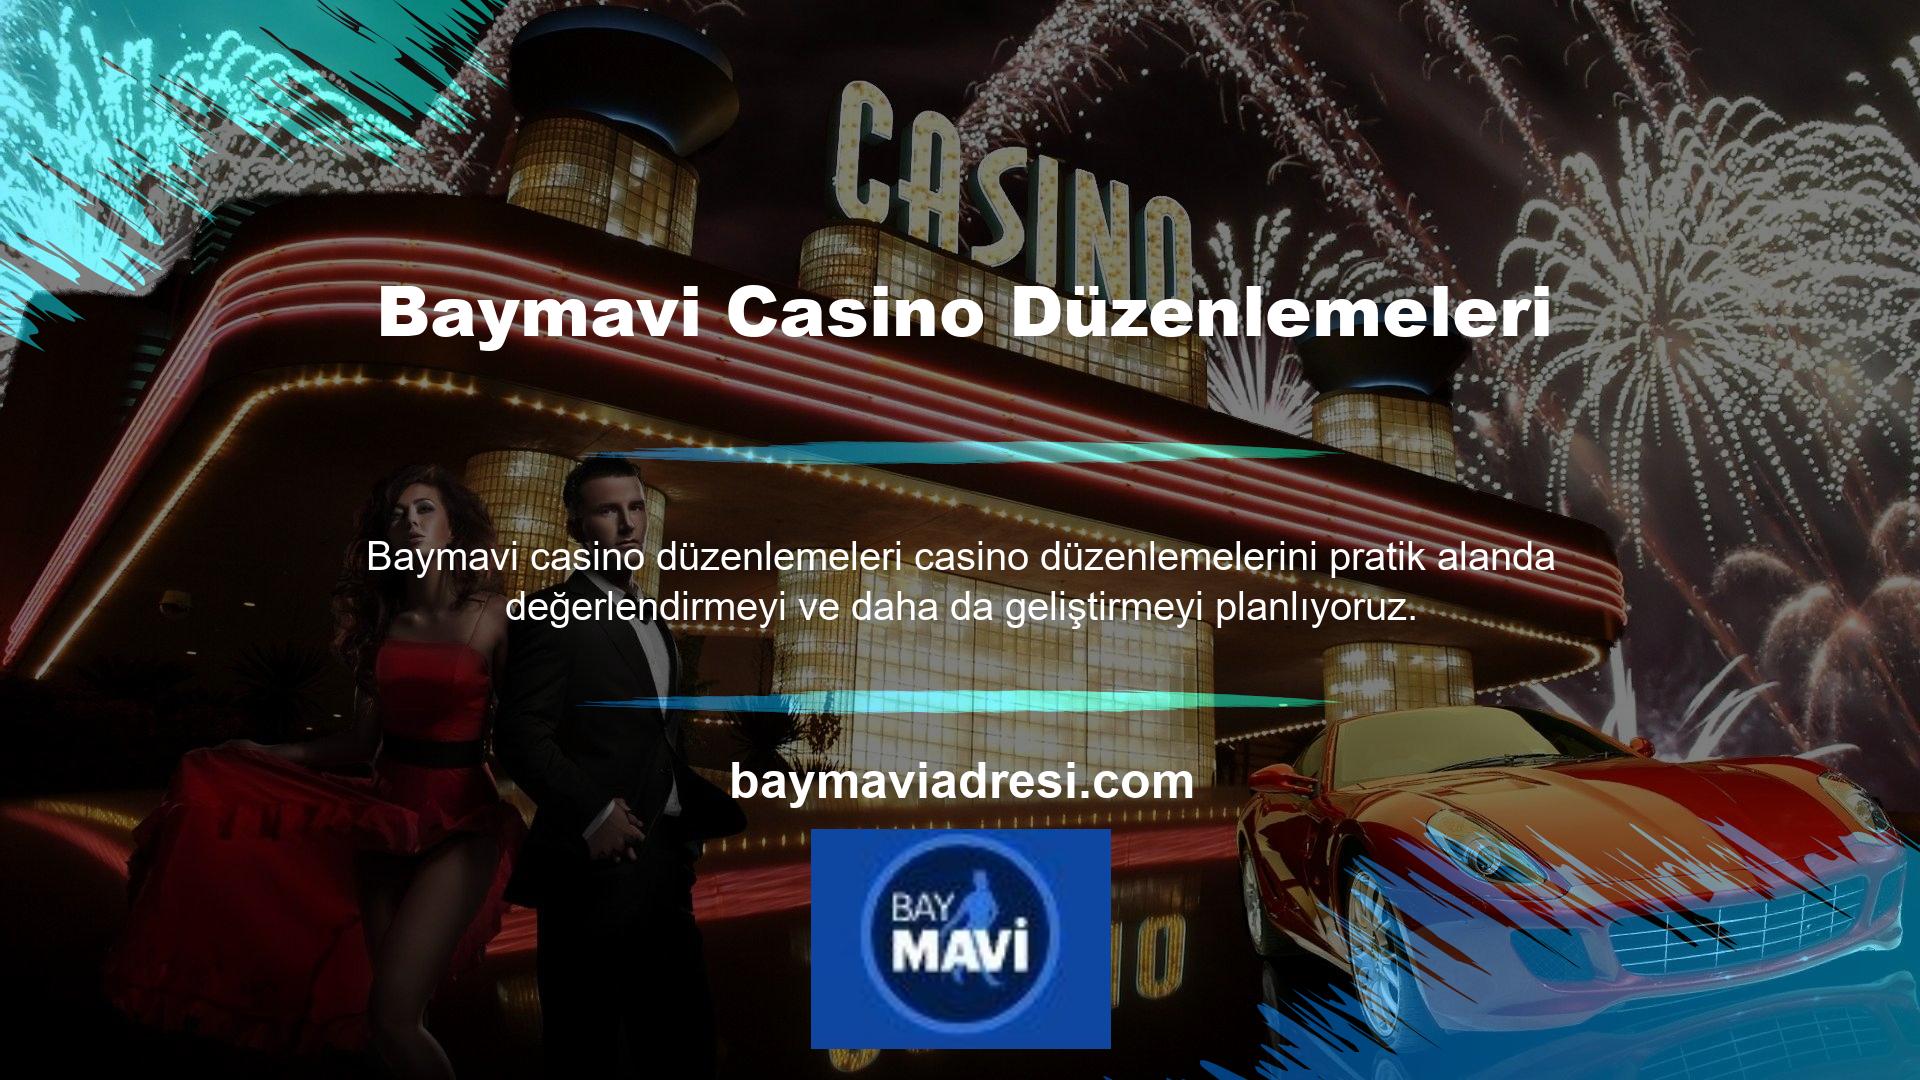 Ancak sitenin mevcut giriş işlevini kullanarak canlı casino yapısına erişme seçeneğiniz de vardır